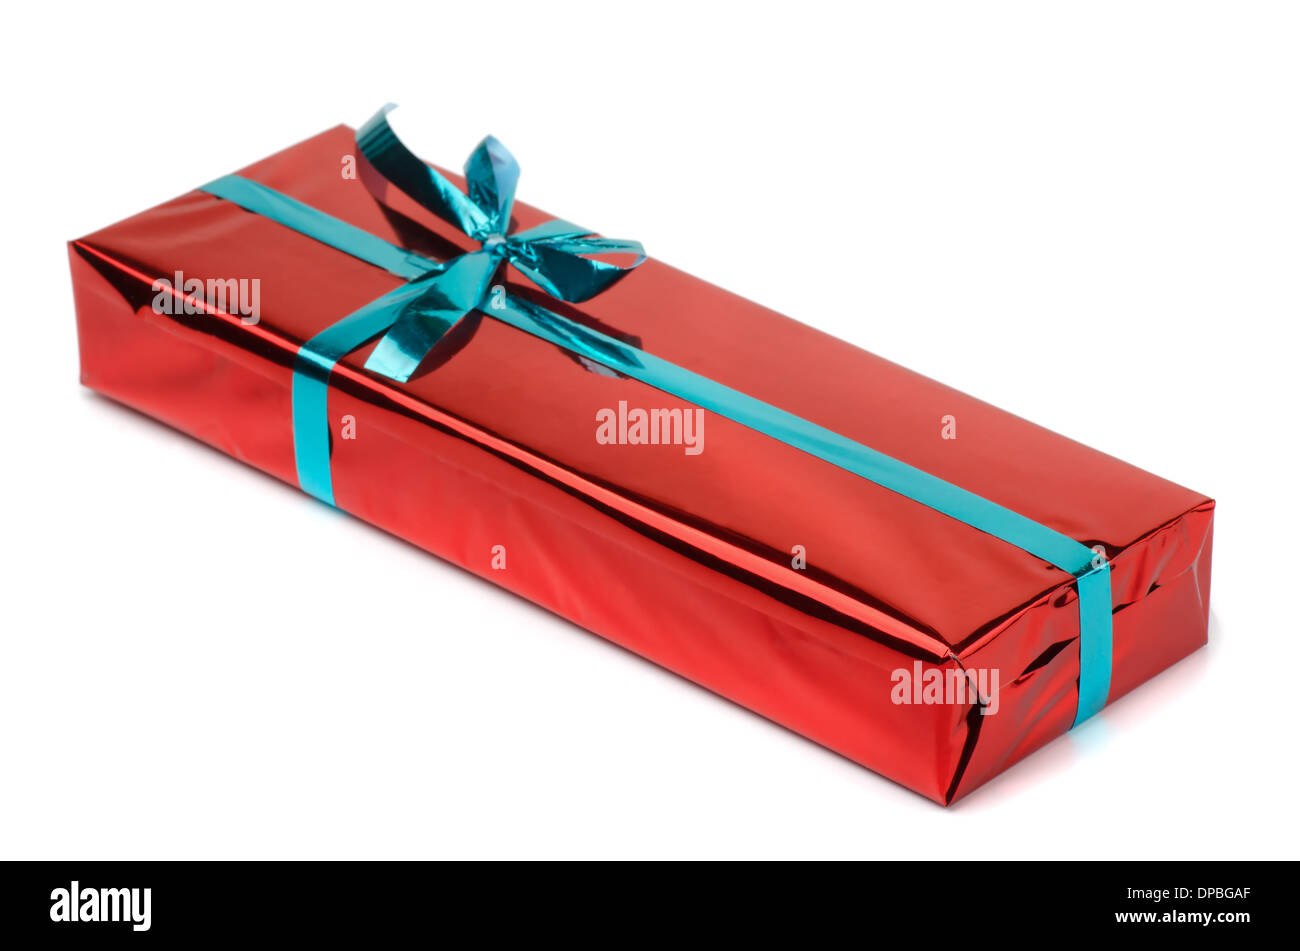 La Pequeña Caja De Regalo Wraped En Papel Reciclado Con Imagen de archivo -  Imagen de color, cinta: 59960889